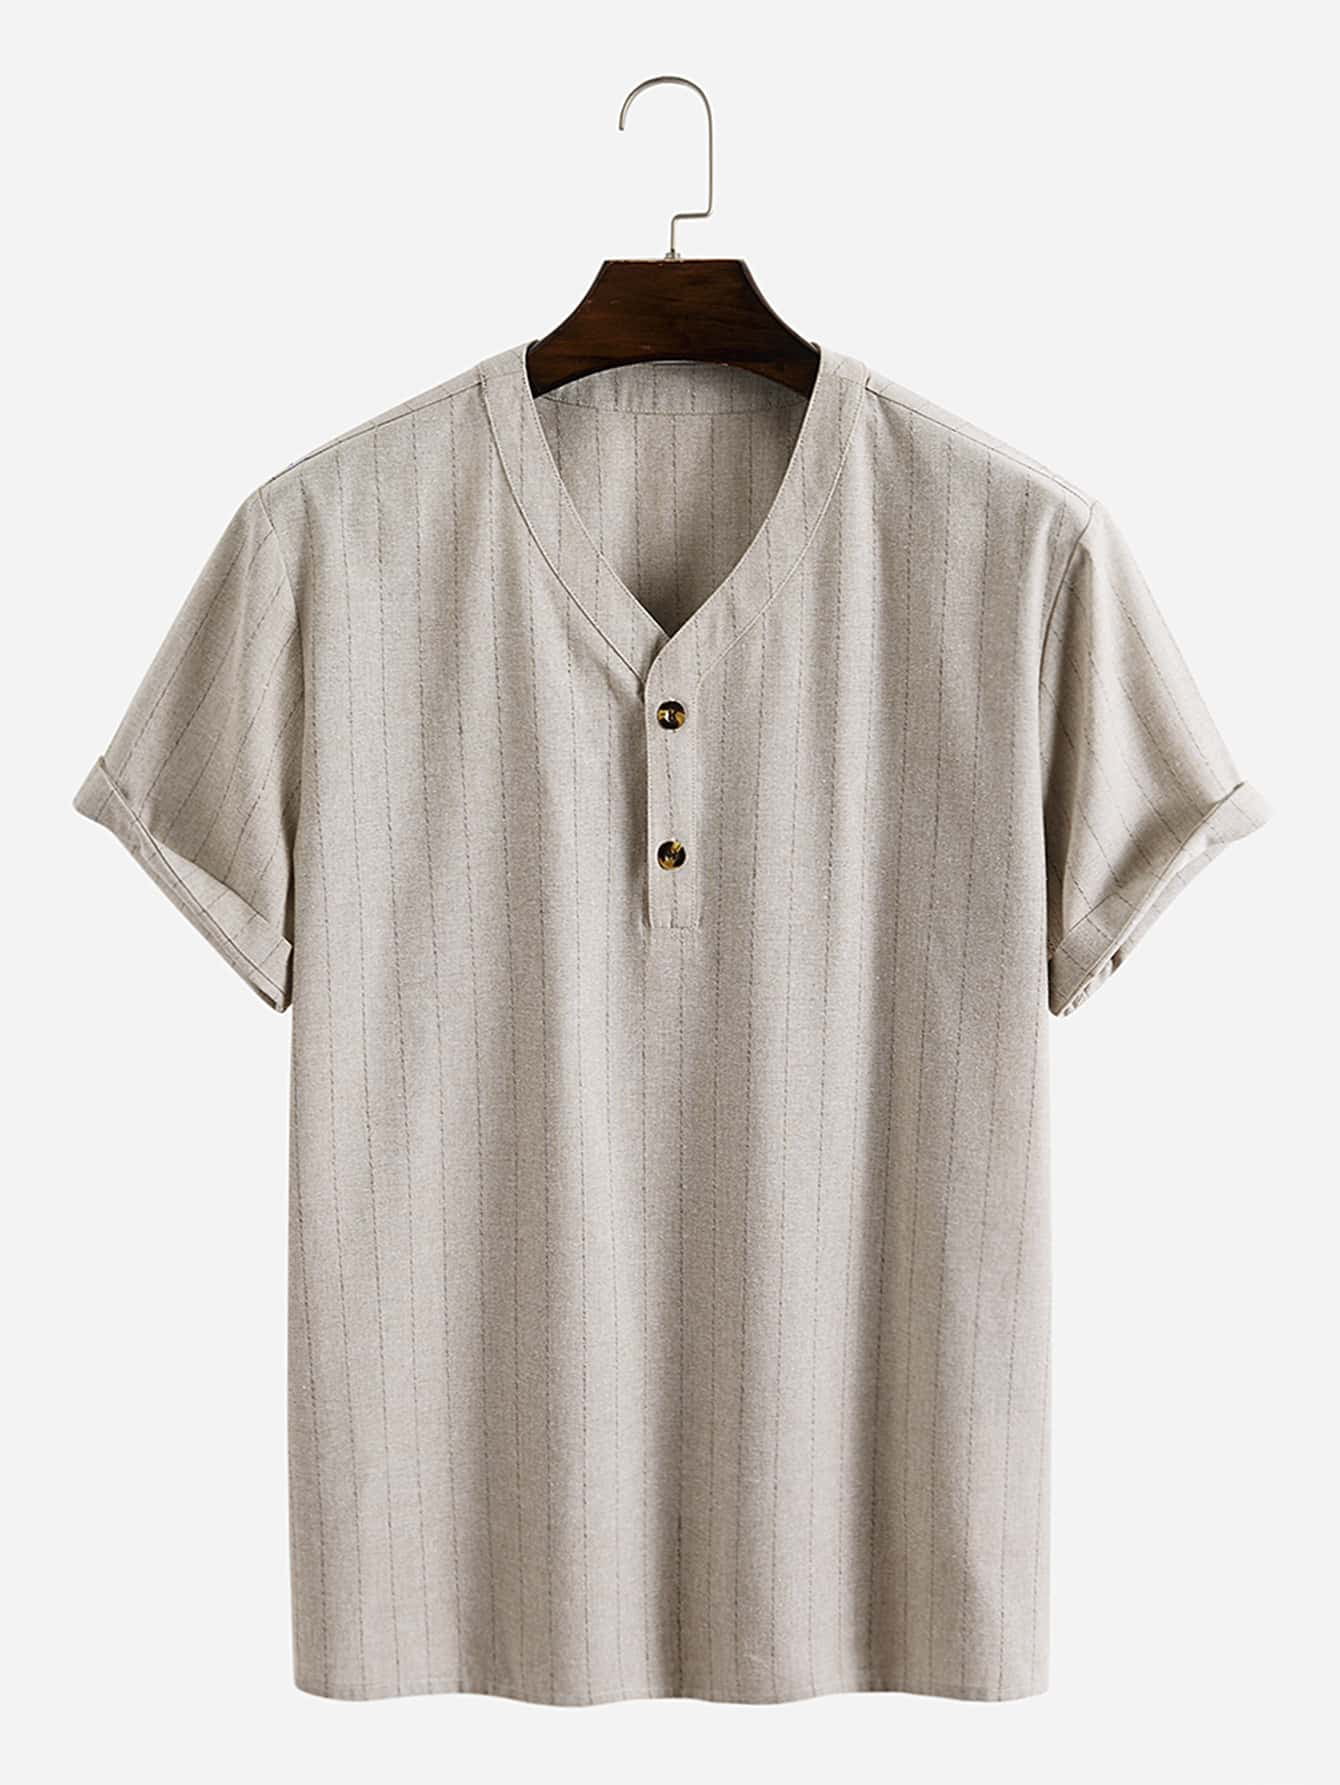 Men Vertical Striped Quarter Button Shirt 2022 A058W - Walmart.com